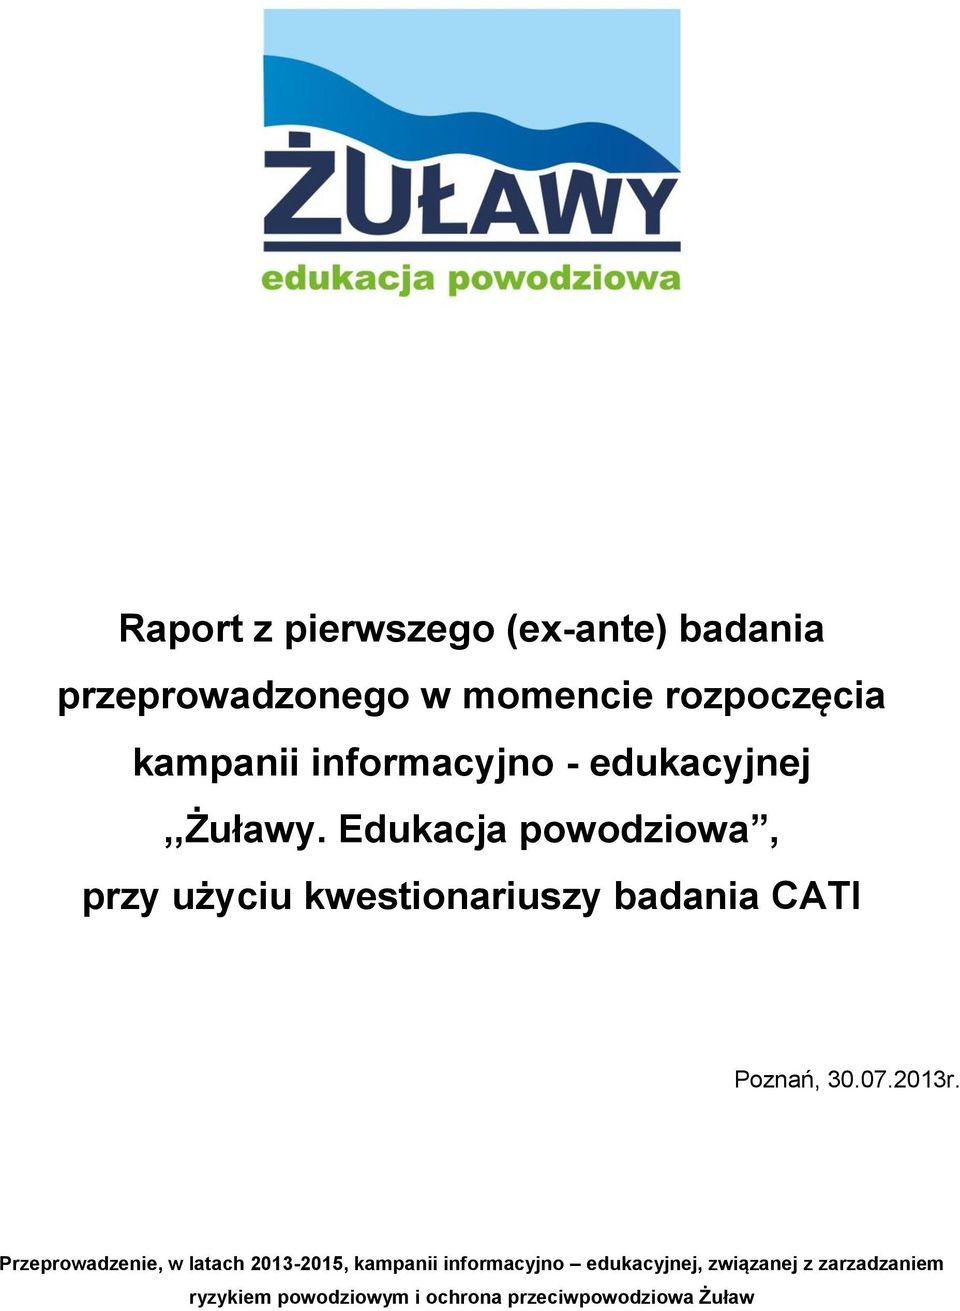 Edukacja powodziowa, przy użyciu kwestionariuszy badania CATI Poznań, 30.07.2013r.